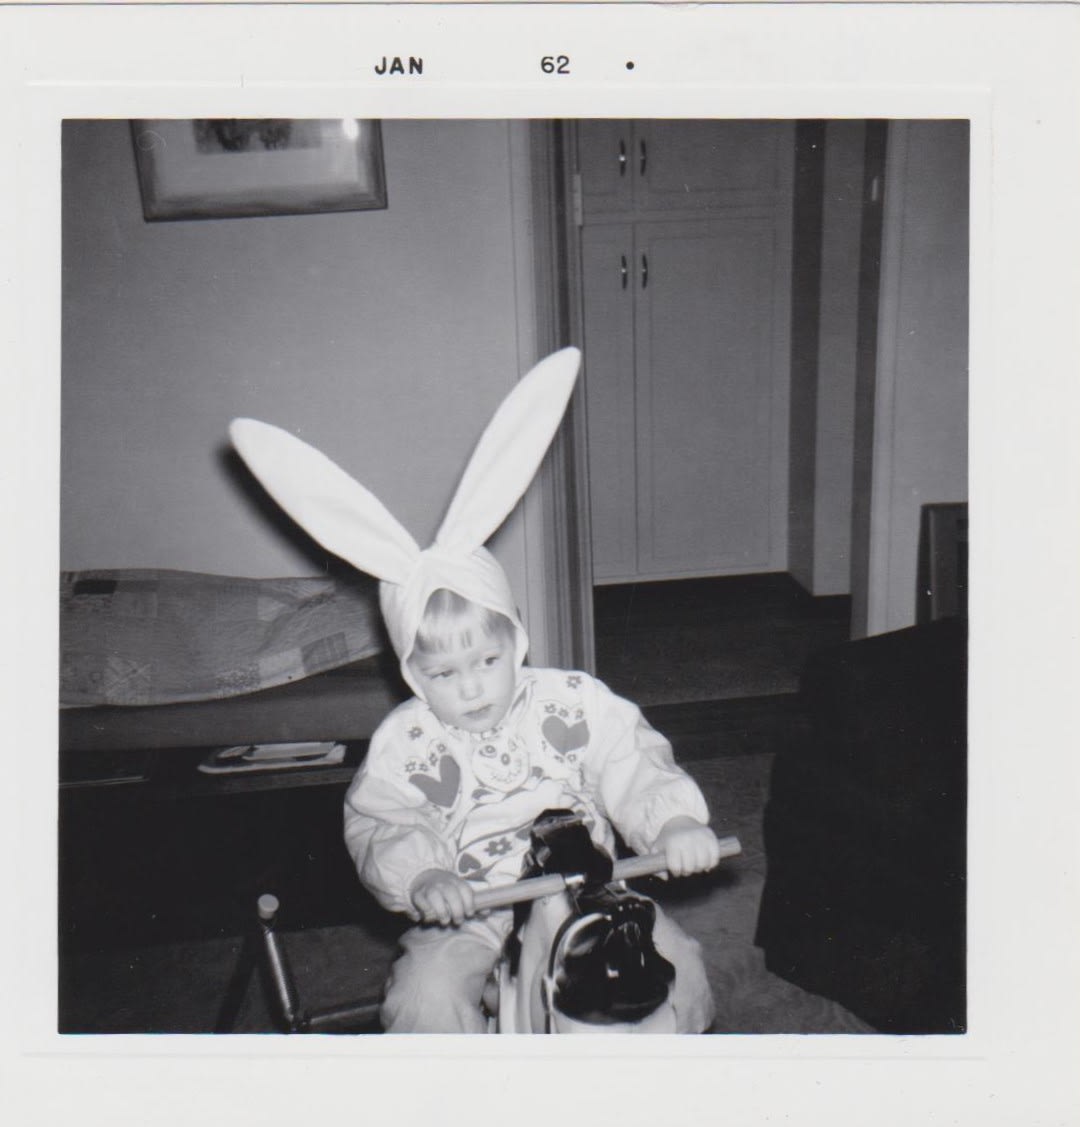 A bunny rabbit riding a pony, January 1962